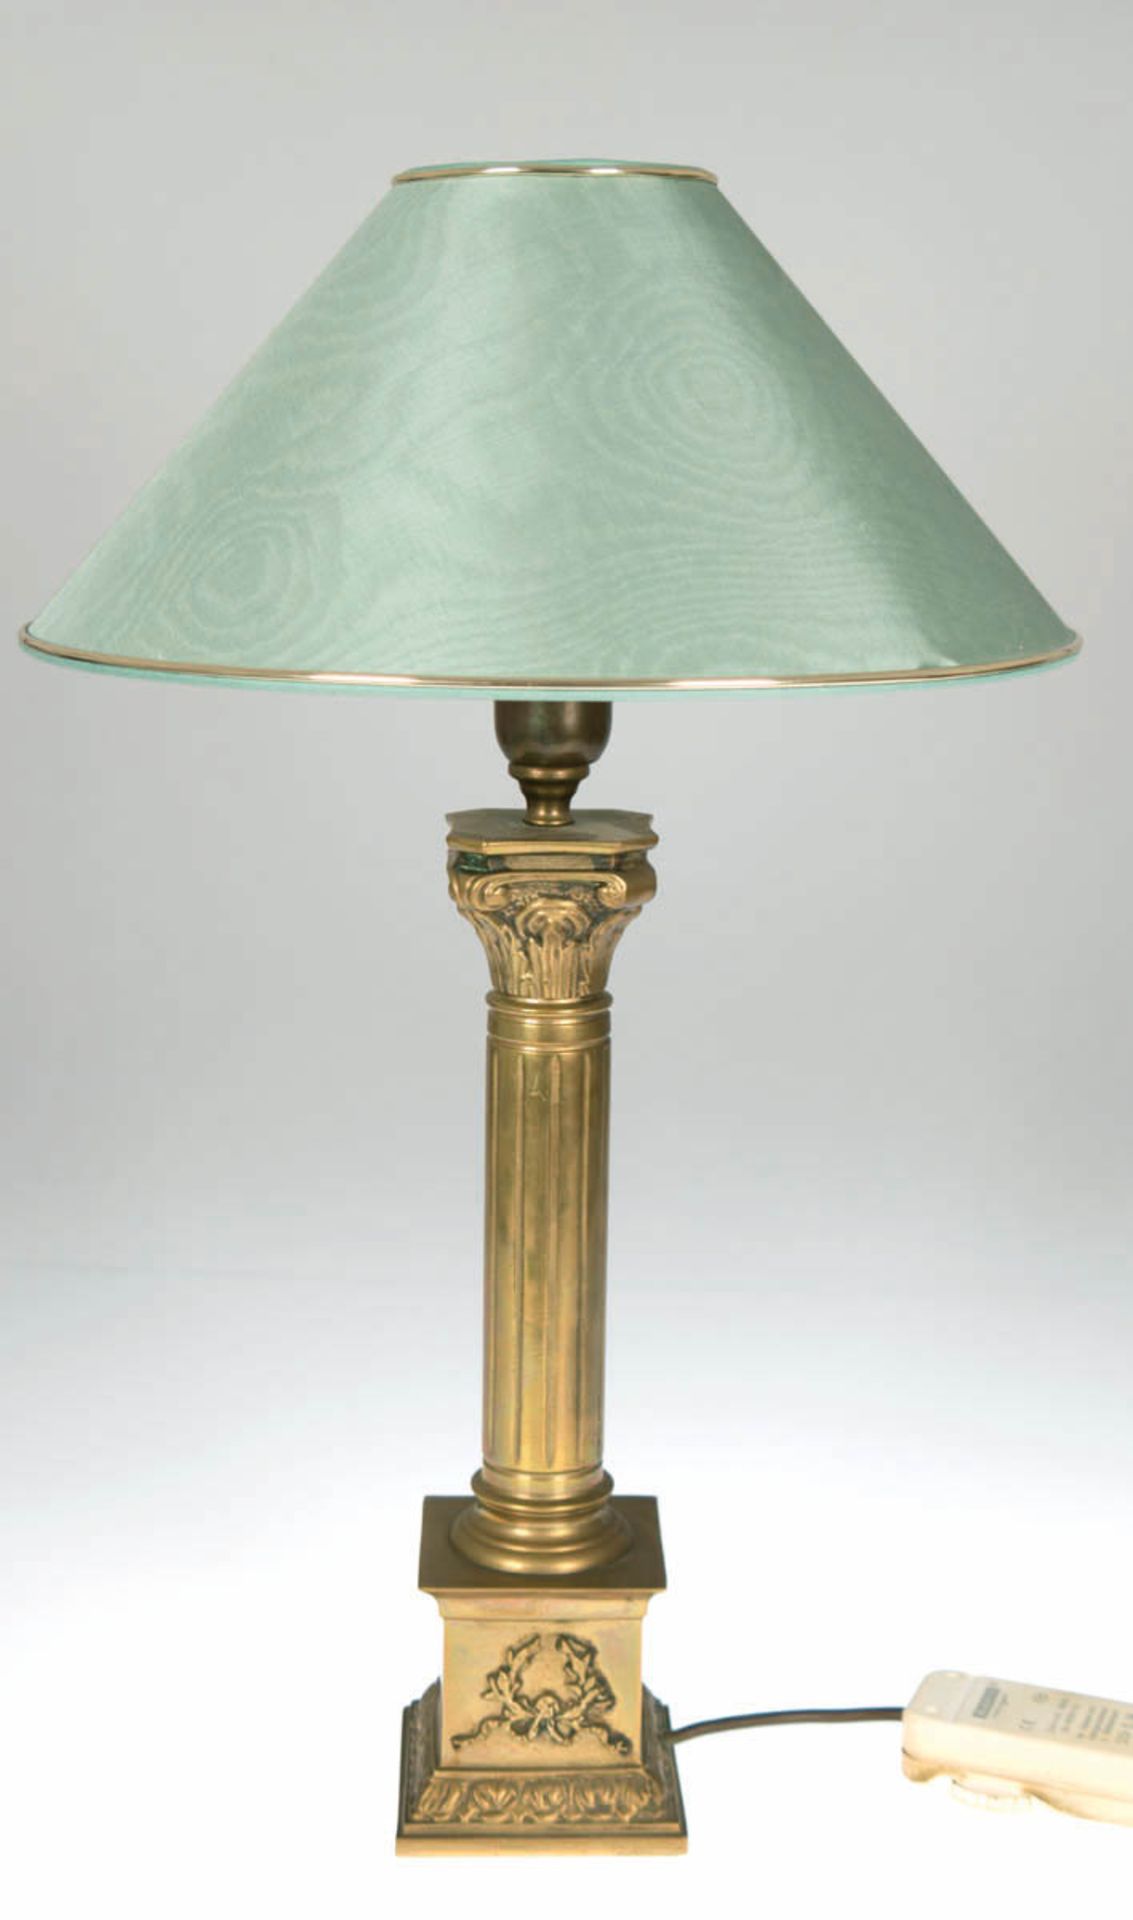 Tischlampe im klassizistischem Stiel, Messing, 1-flammig, grüner Schirm mit Seidenbezug,H. 56